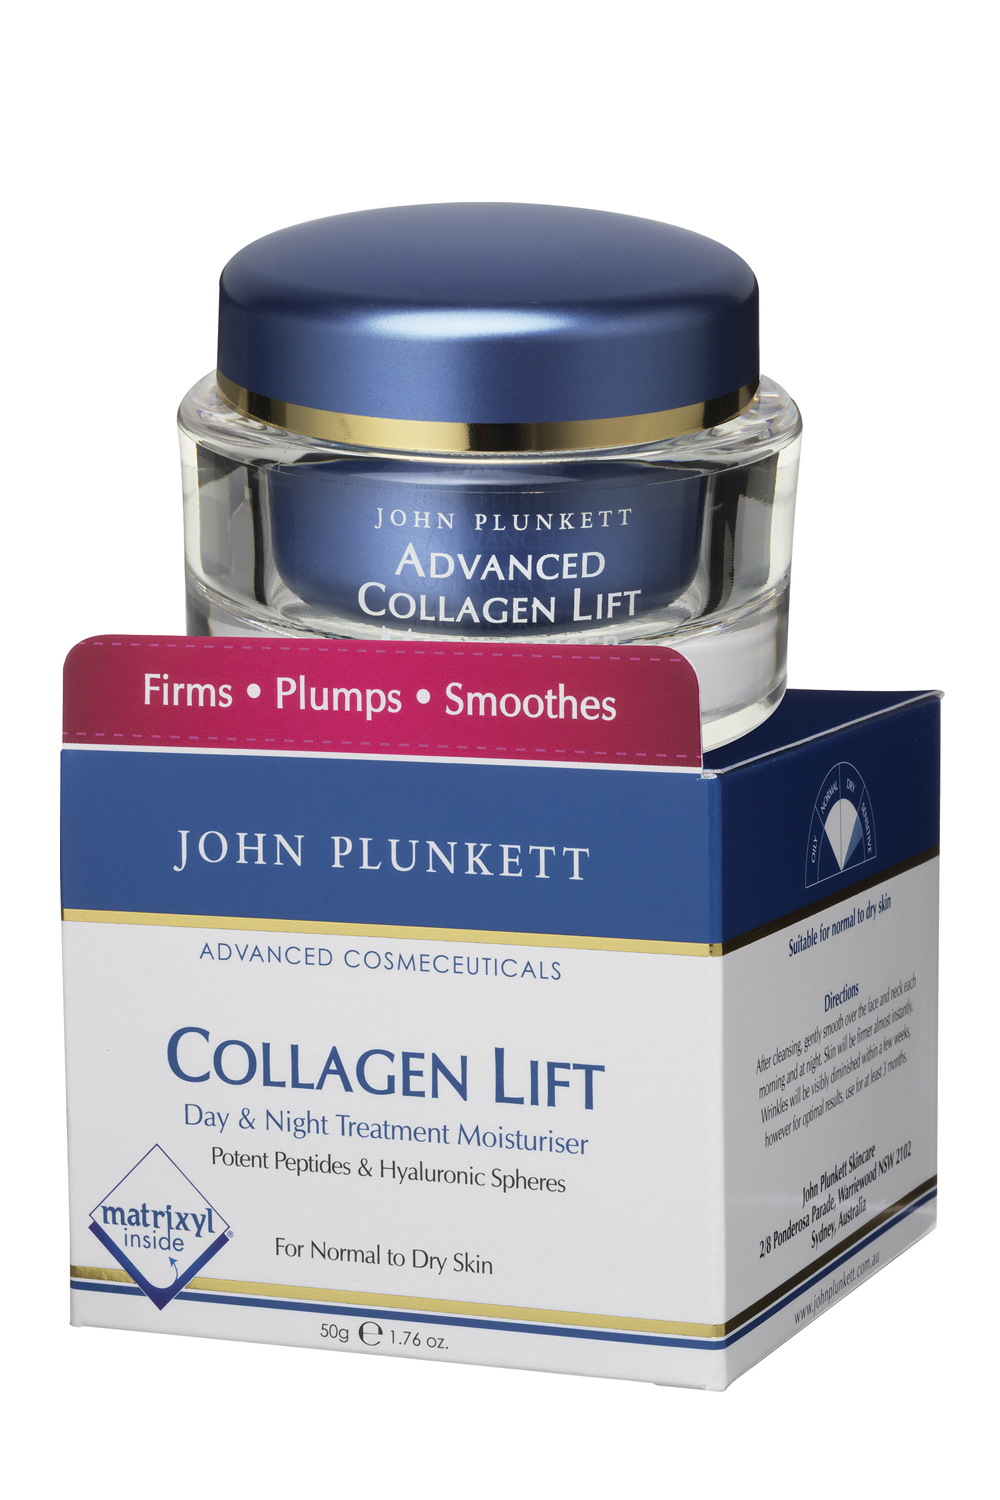 John Plunkett Collagen Lift Moisturiser contains Matrixyl 3000